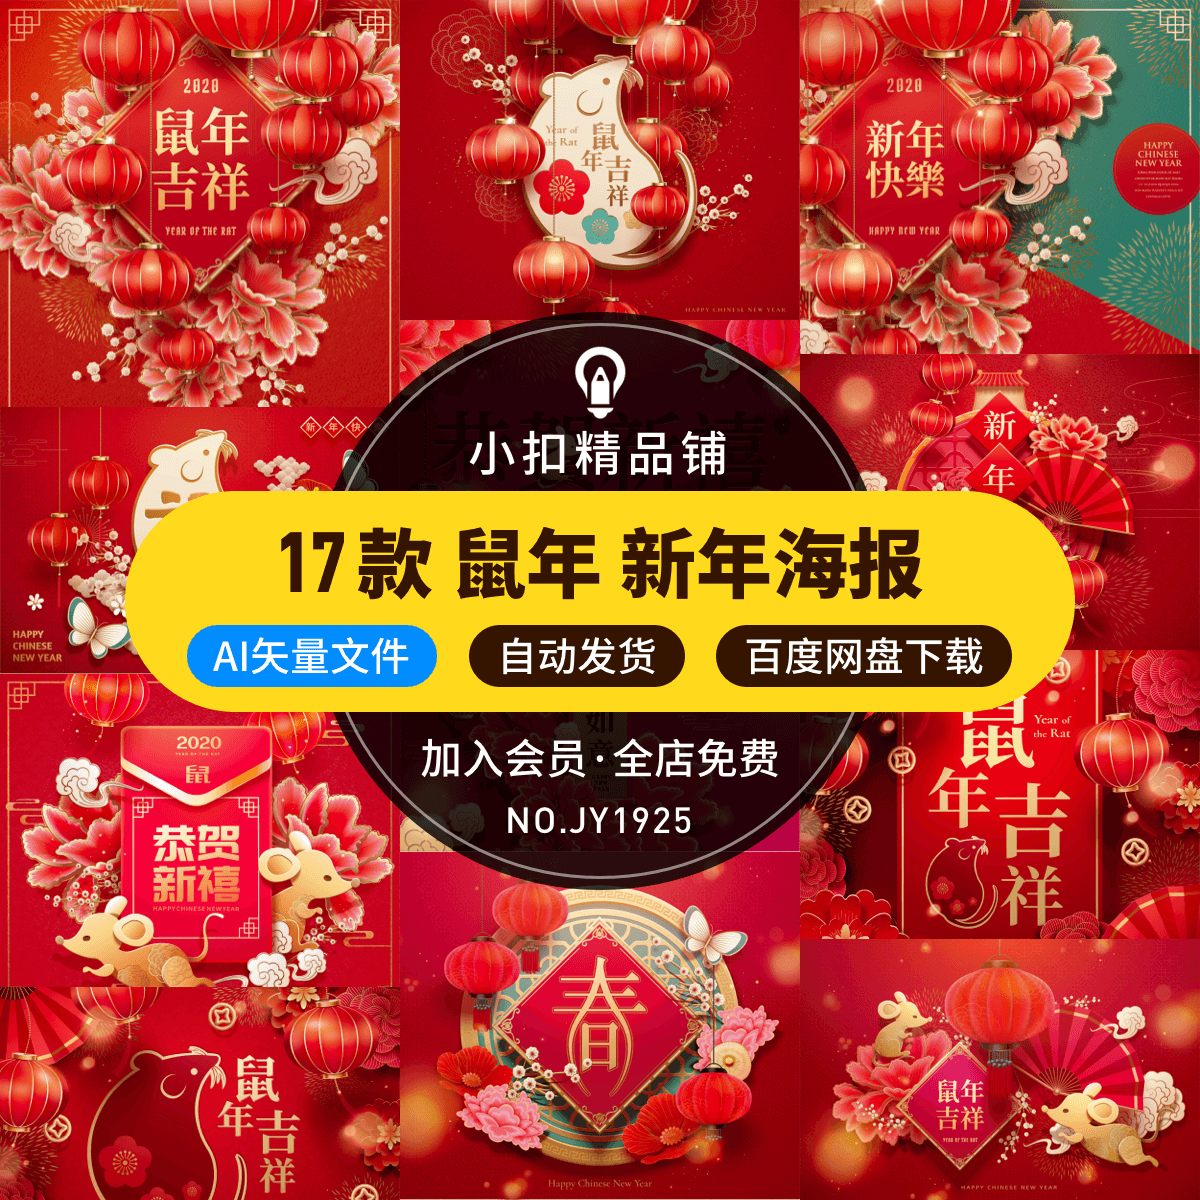 春节新春迎新年快乐鼠年吉祥中国年红灯笼海报背景AI矢量设计素材